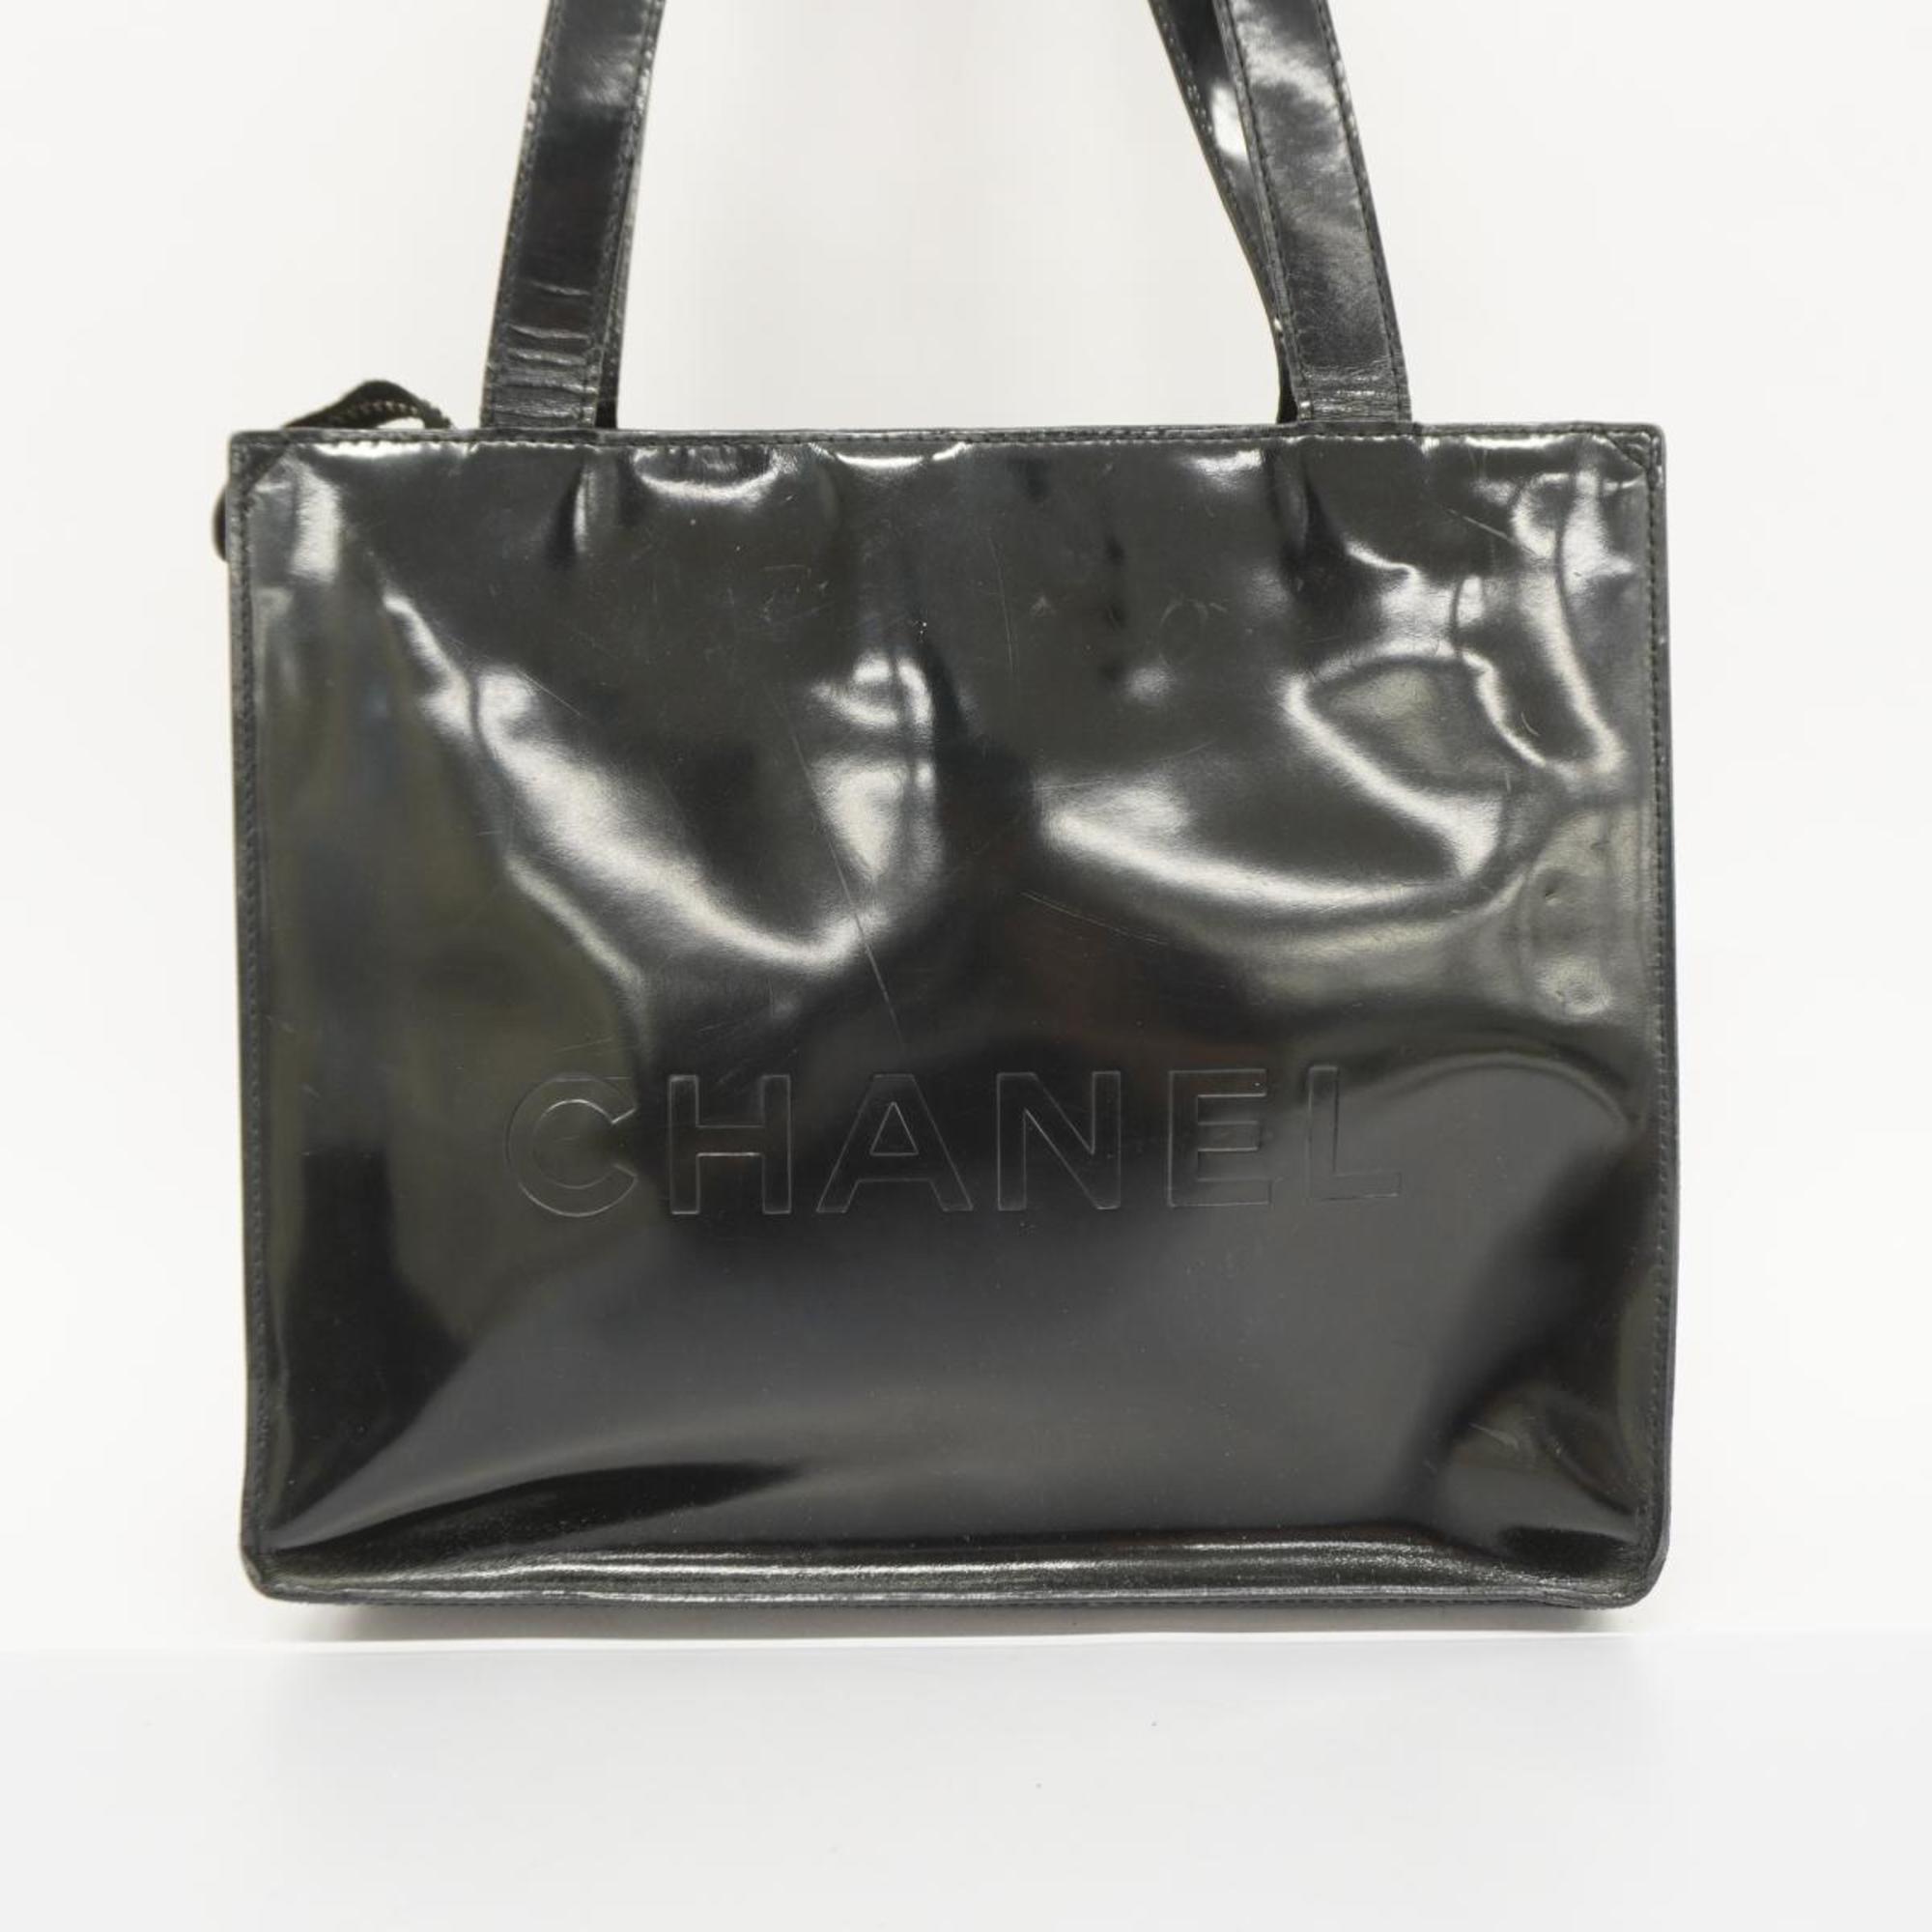 シャネル(Chanel) シャネル トートバッグ パテントレザー ブラック  レディース